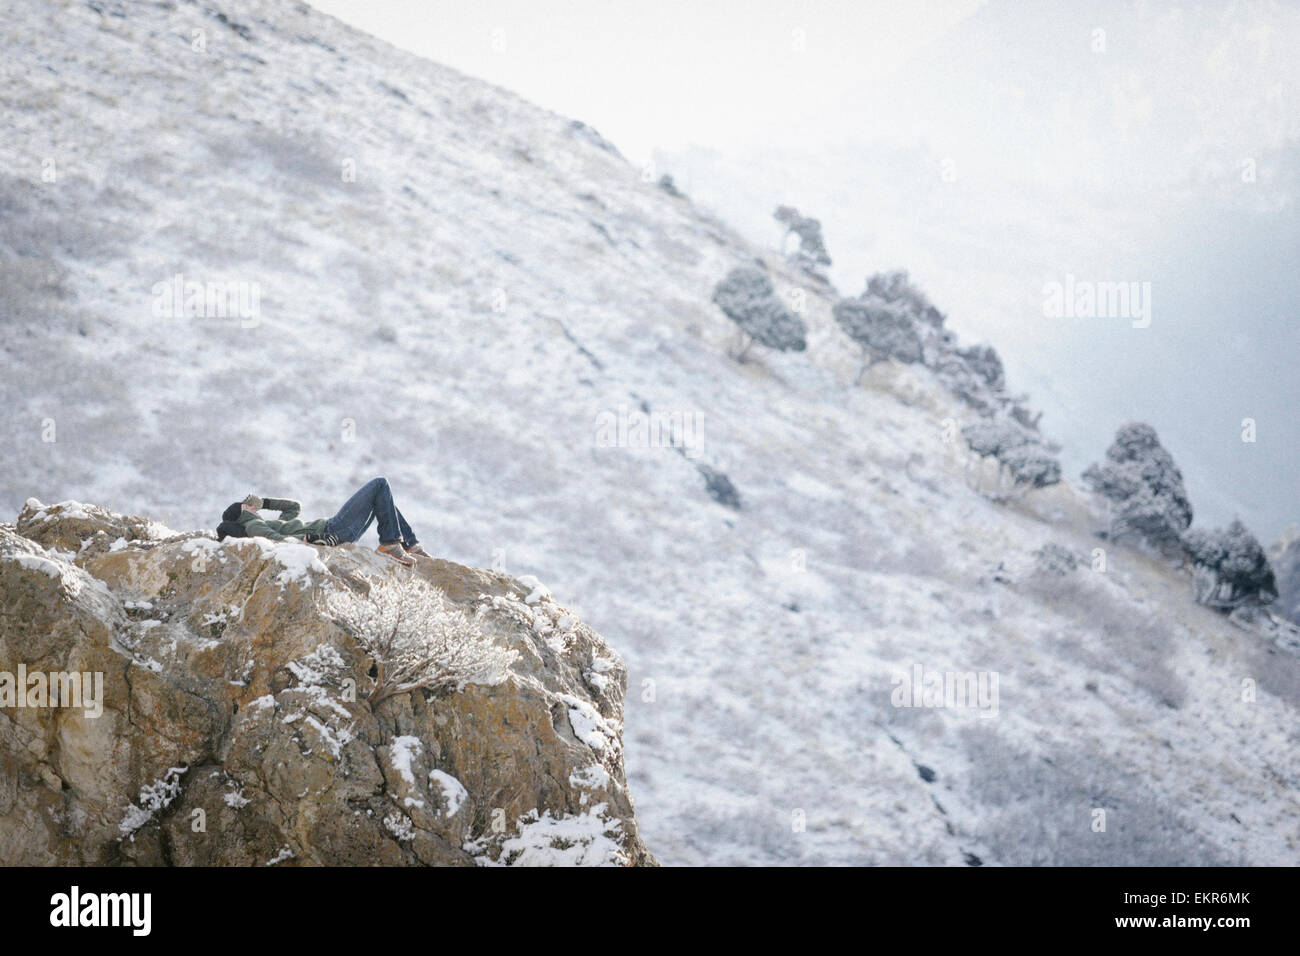 Un homme, un randonneur en montagne, prendre du repos couché sur un affleurement rocheux au-dessus d'une vallée. Banque D'Images